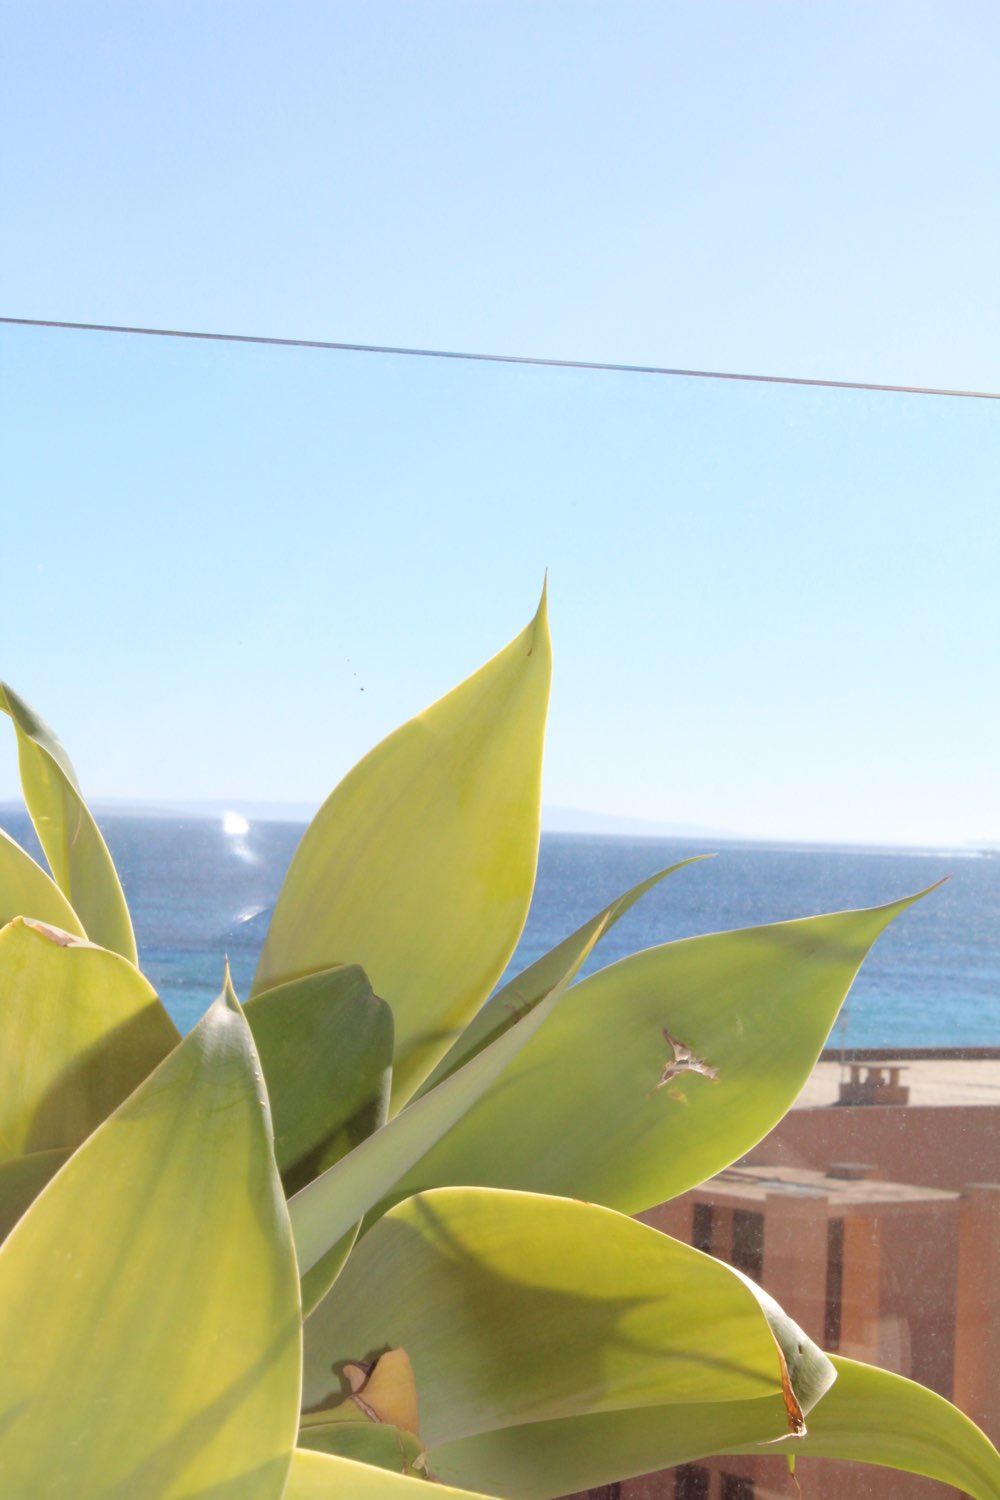 Apartamento en primera línea con vistas al mar en Playa d'en Bossa, Ibiza